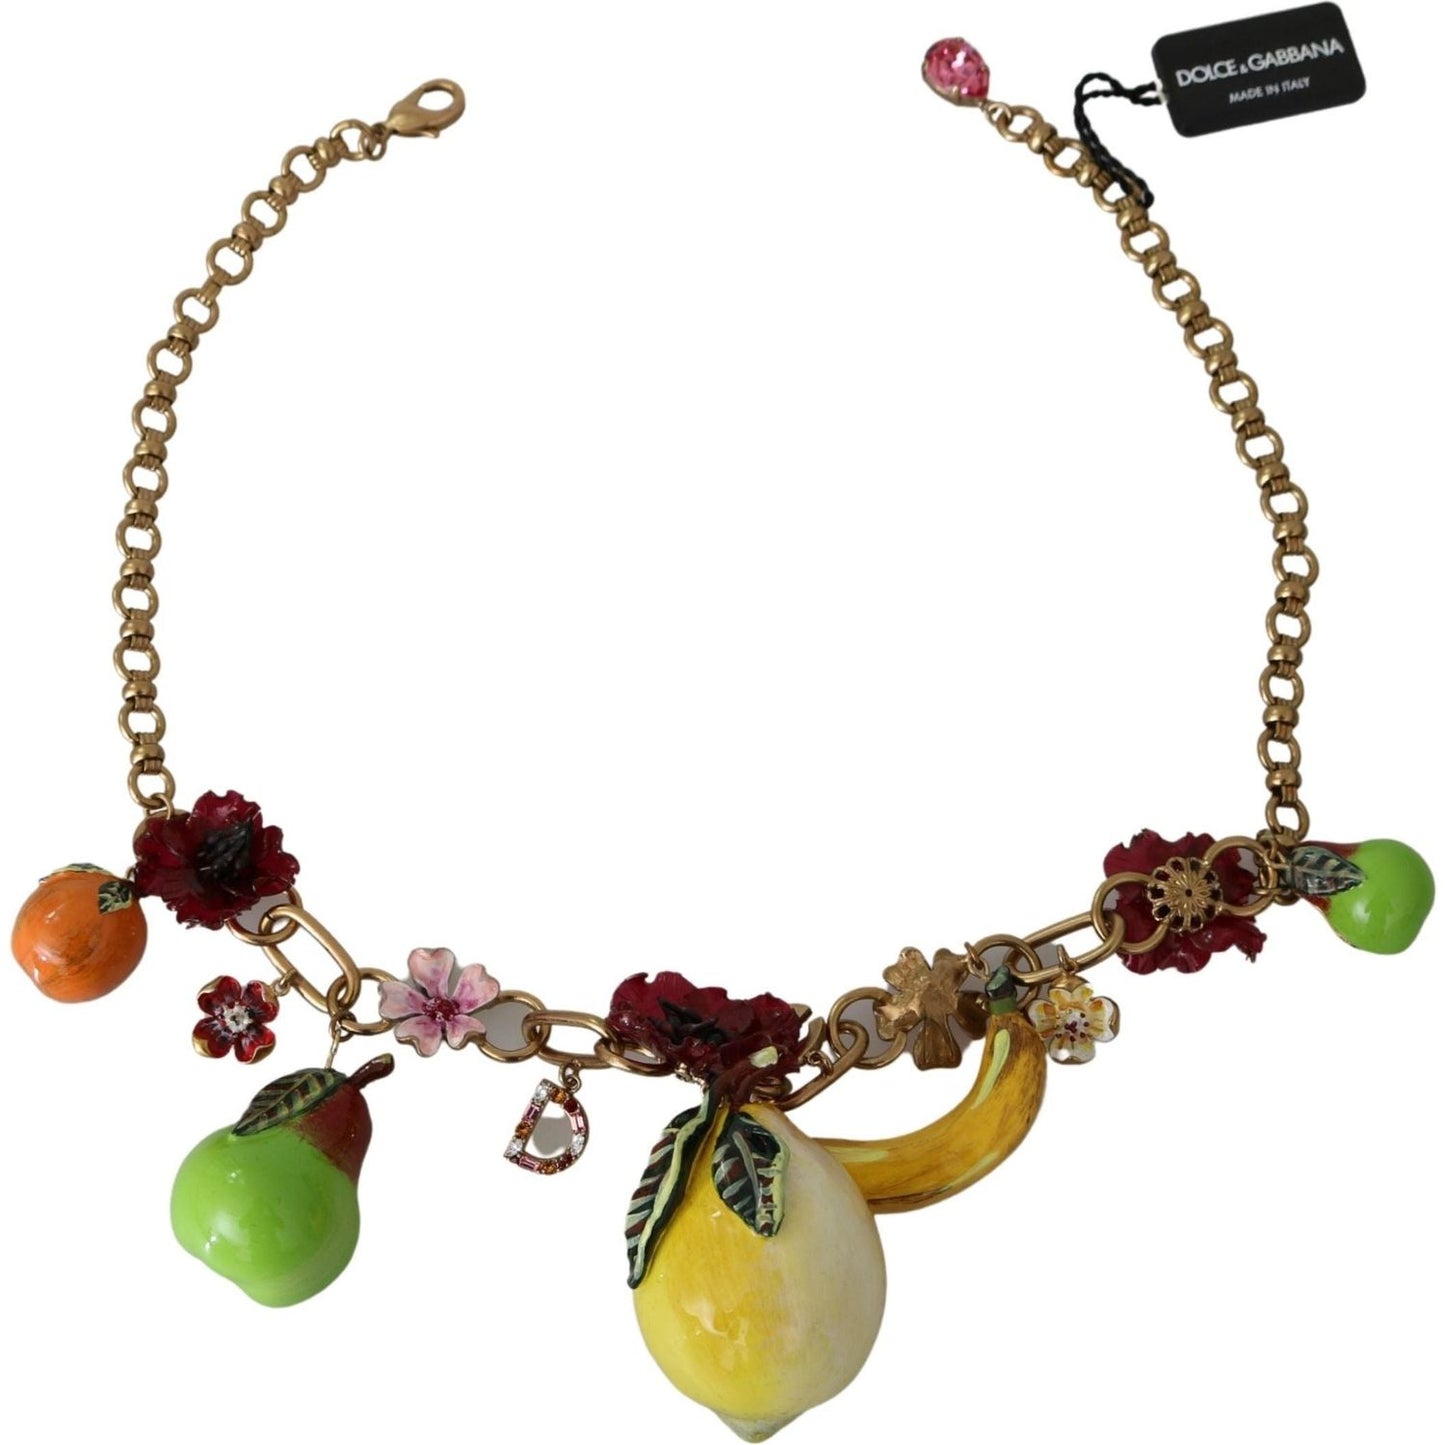 Dolce & Gabbana Crystal Embellished Floral Charm Necklace Necklace fruit-pendants-flowers-crystal-dg-logo-gold-brass-necklace